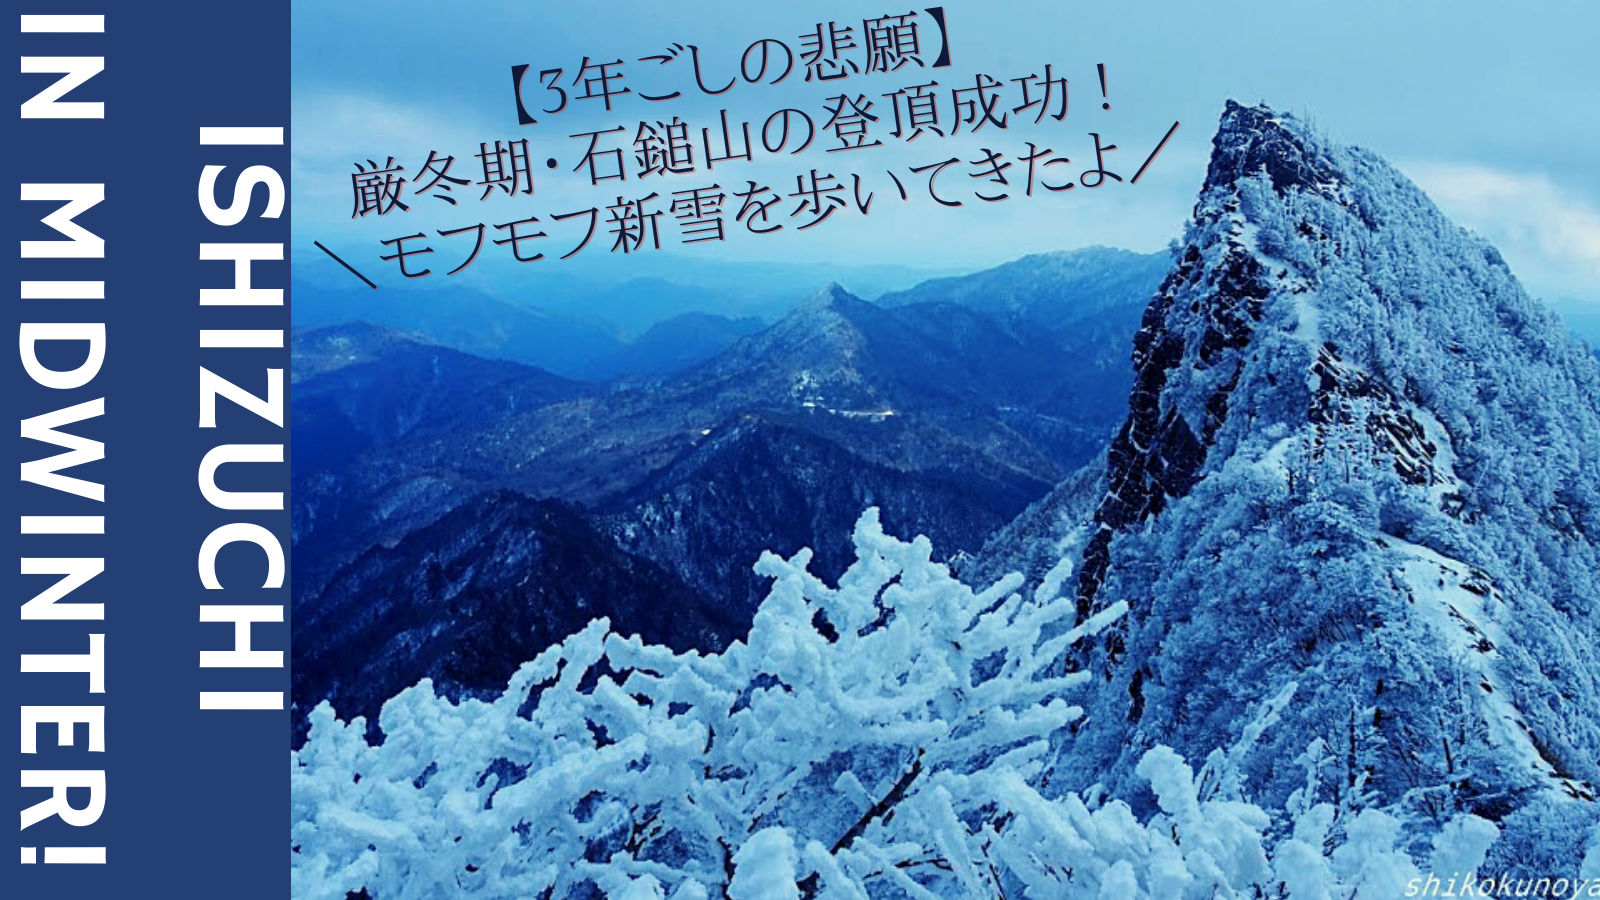 【3年ごしの悲願】厳冬期・石鎚山の登頂成功！モフモフ新雪を歩いてきたよ